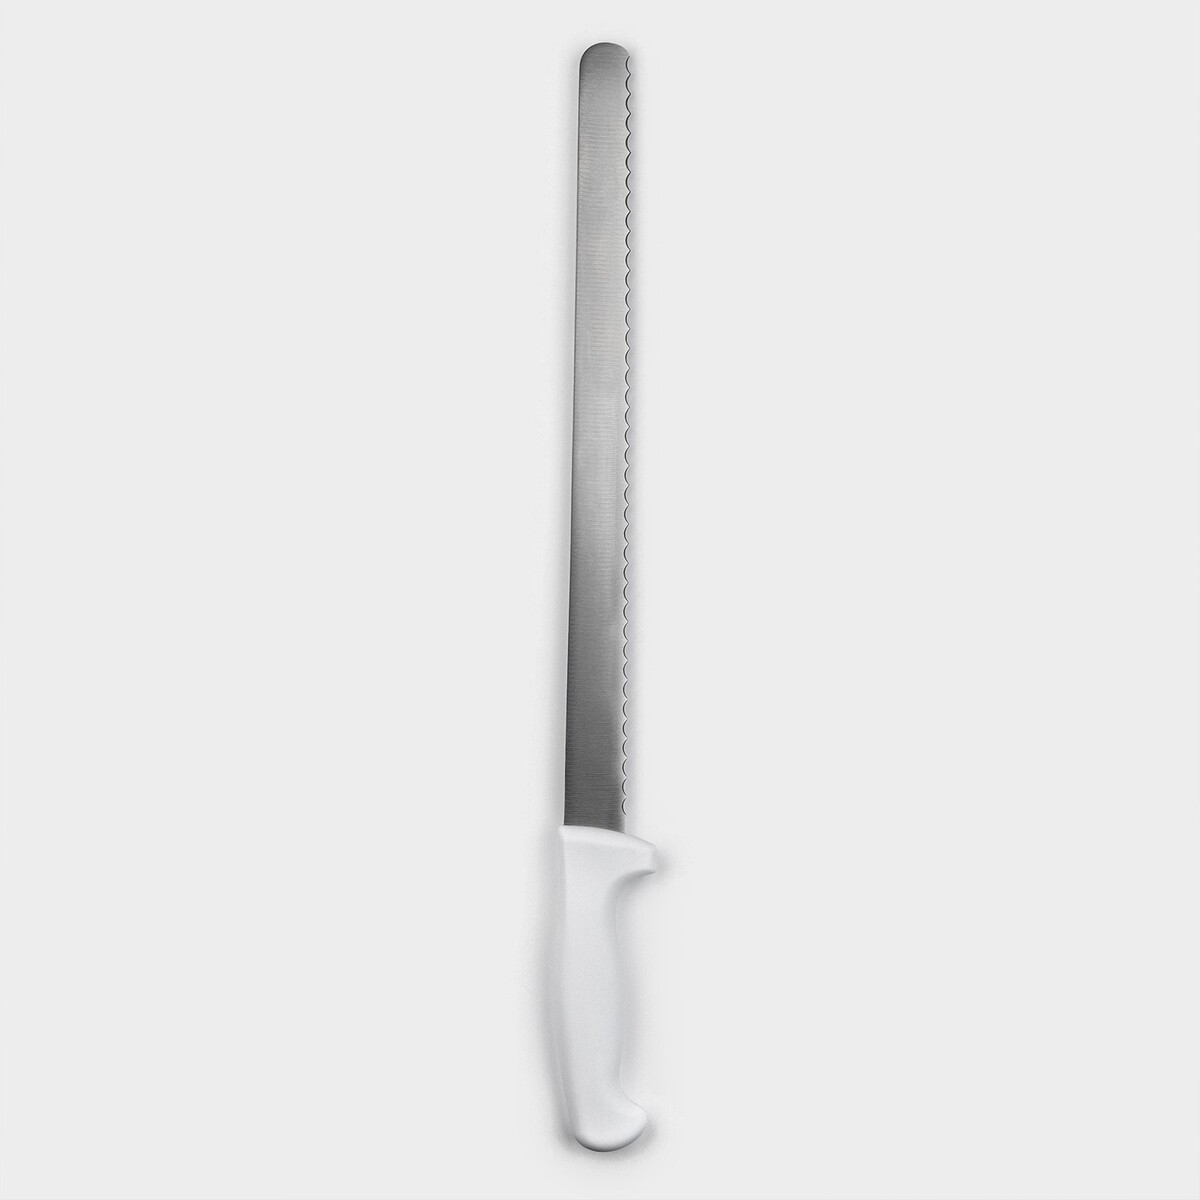 Нож для бисквита, рабочая поверхность 34 см, крупные зубчики нож для бисквита мелкие зубчики ручка пластик рабочая поверхность 29 5 см толщина лезвия 1 9 мм